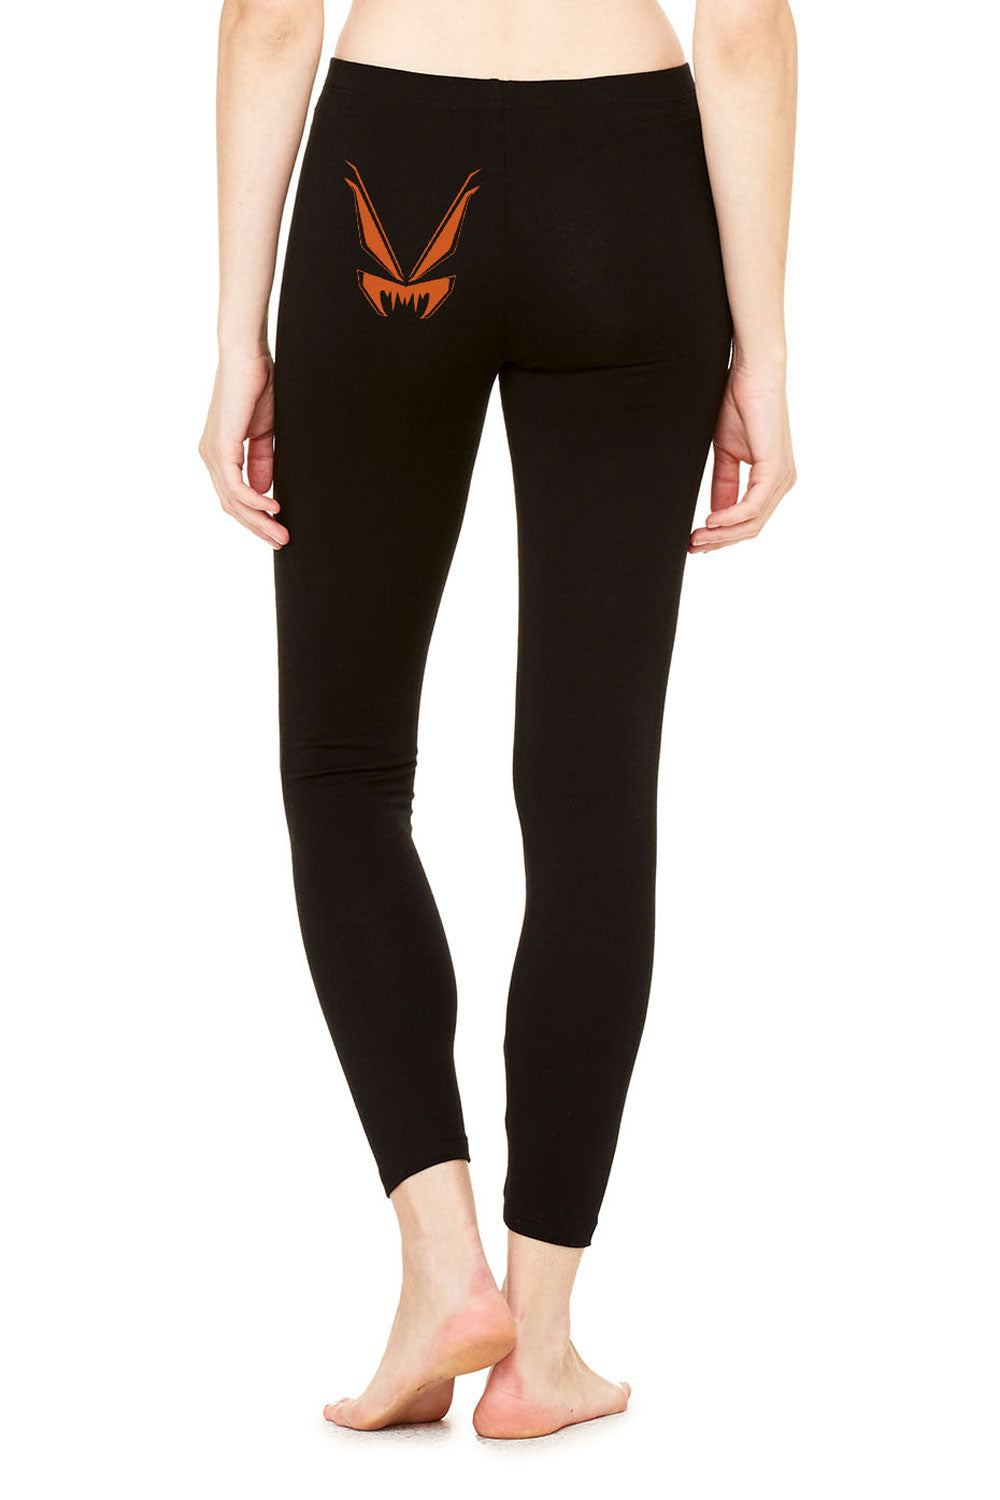 spooky bat leggings for women